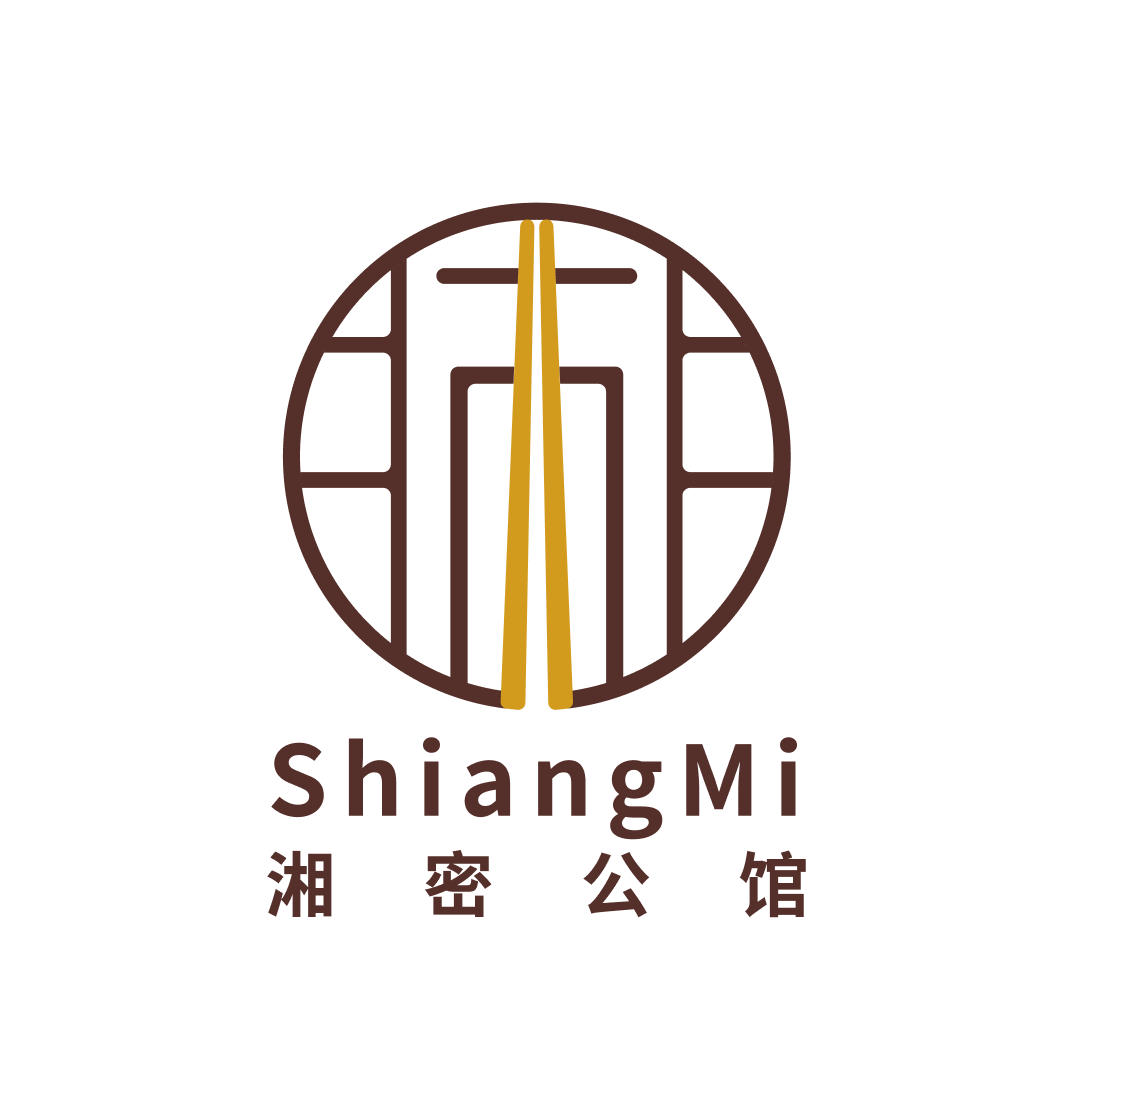 Shiangmi